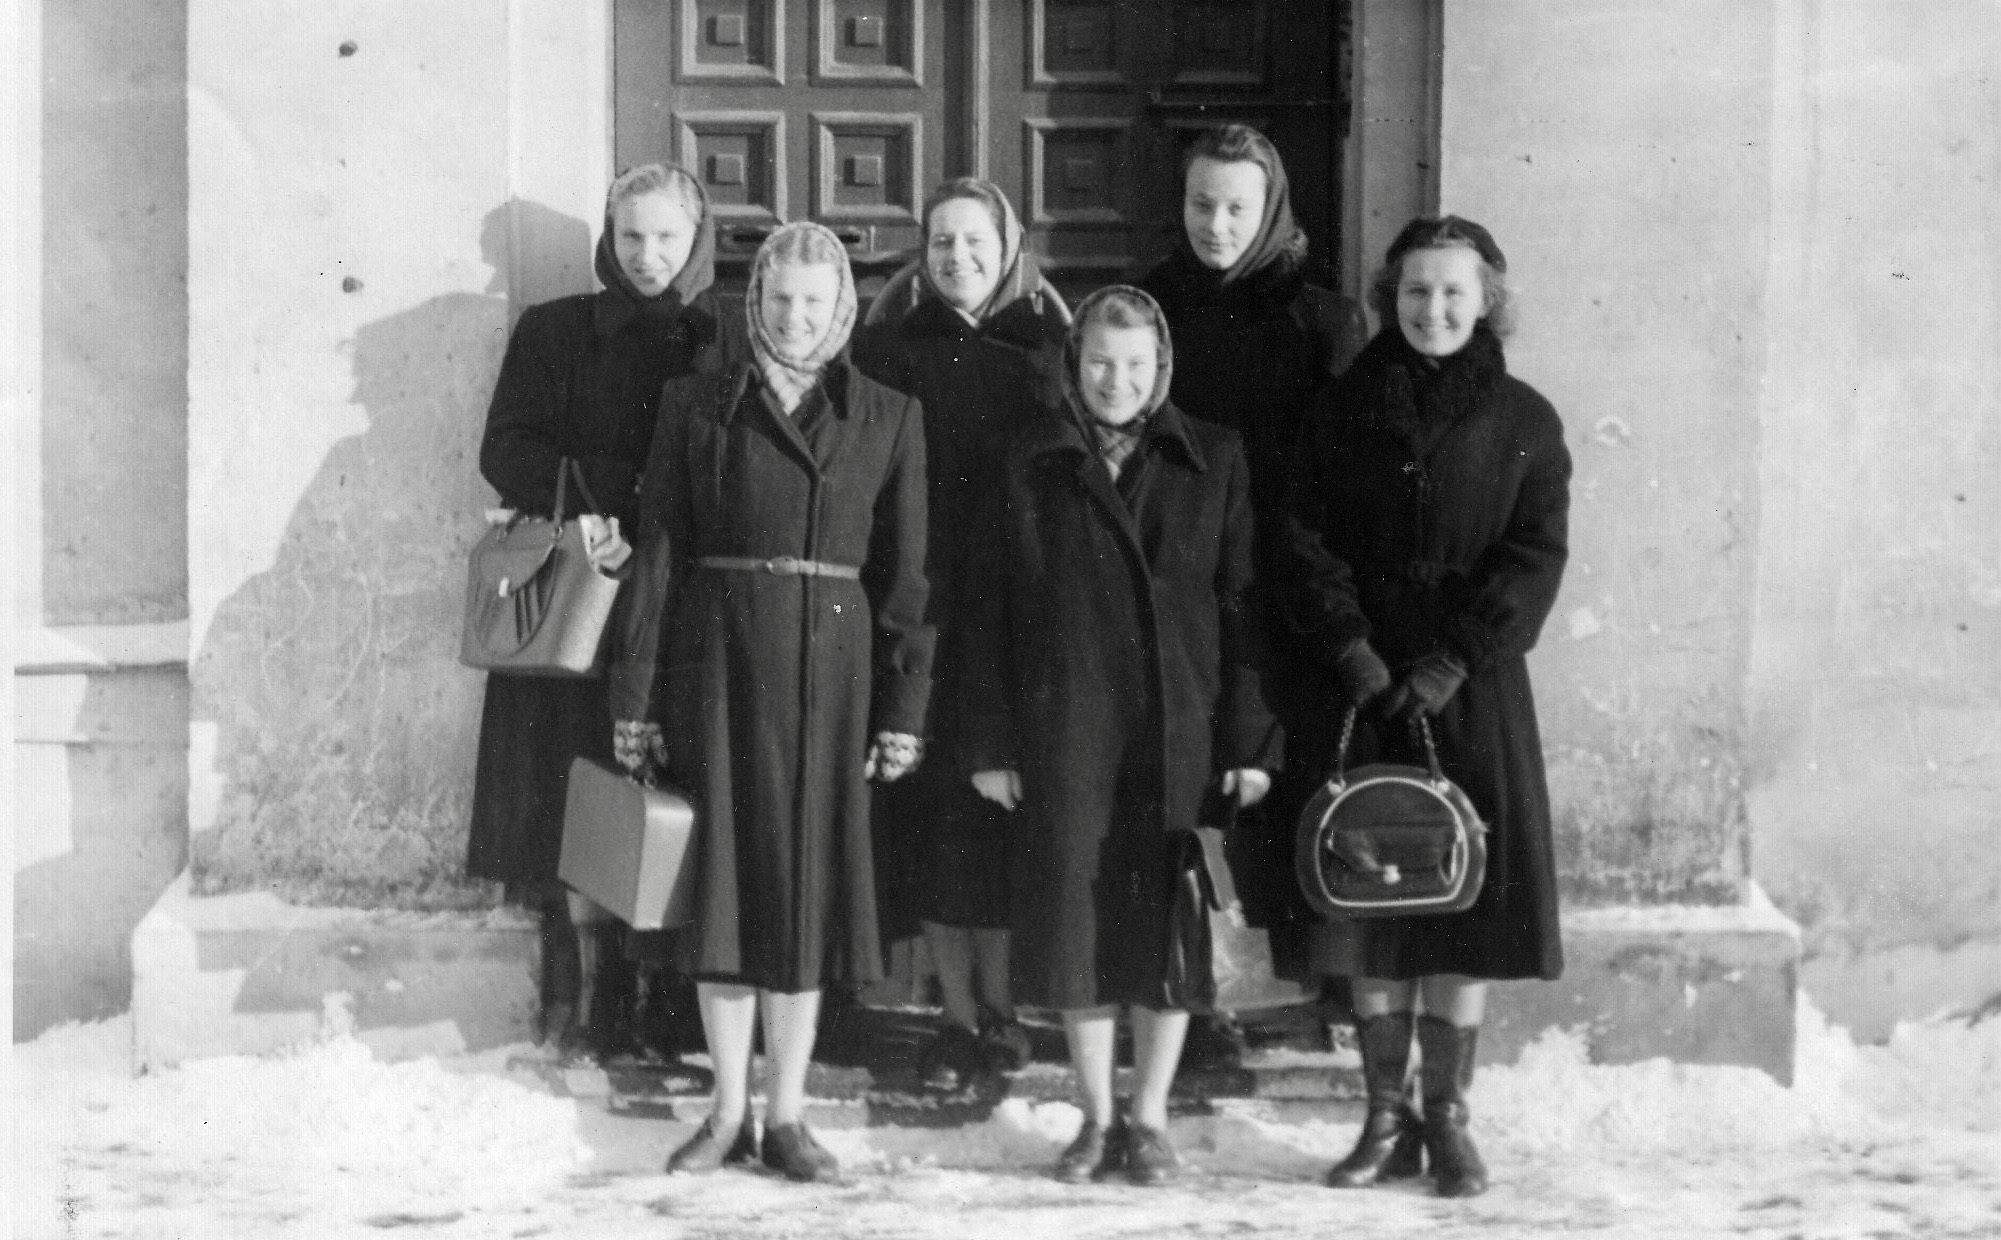 Tartus Eha 36 asunud pedagoogilise kooli ühiselamu on olnud koduks paljudele üliõpilastele. Foto 1965/66. õppeaastast.